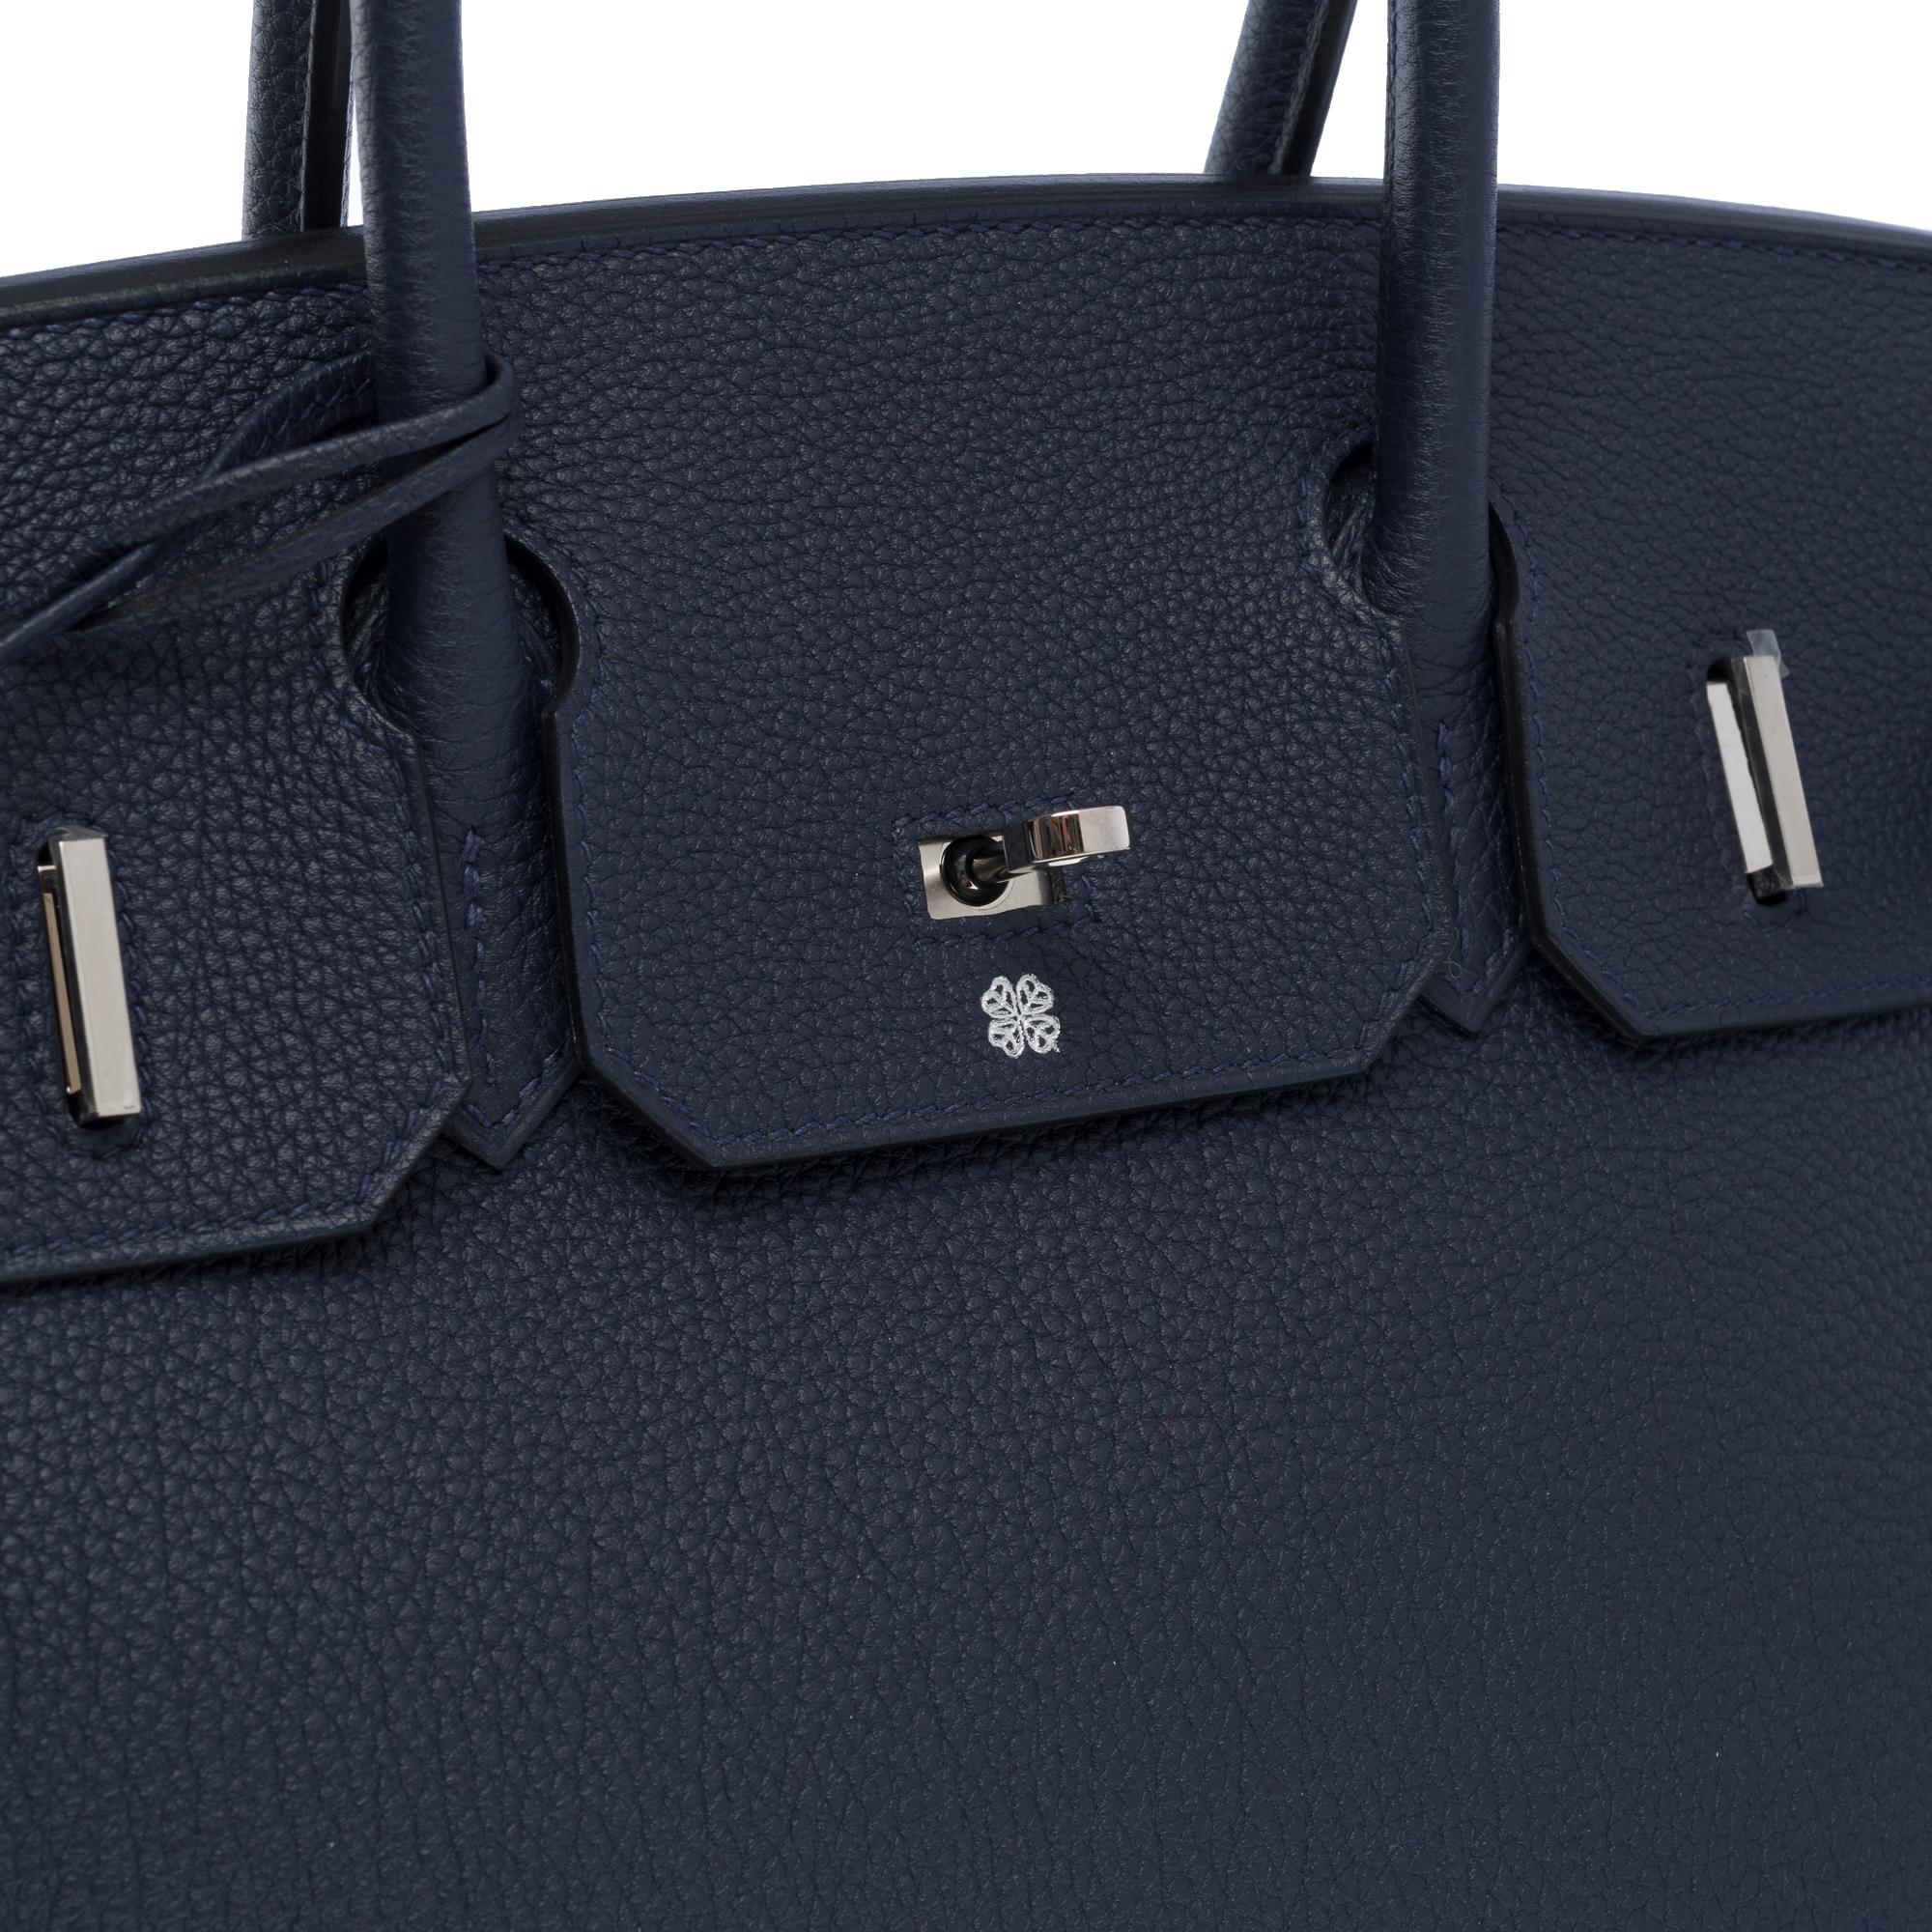 Hermes Birkin 30 handbag in Bleu nuit Togo leather, SHW For Sale 3